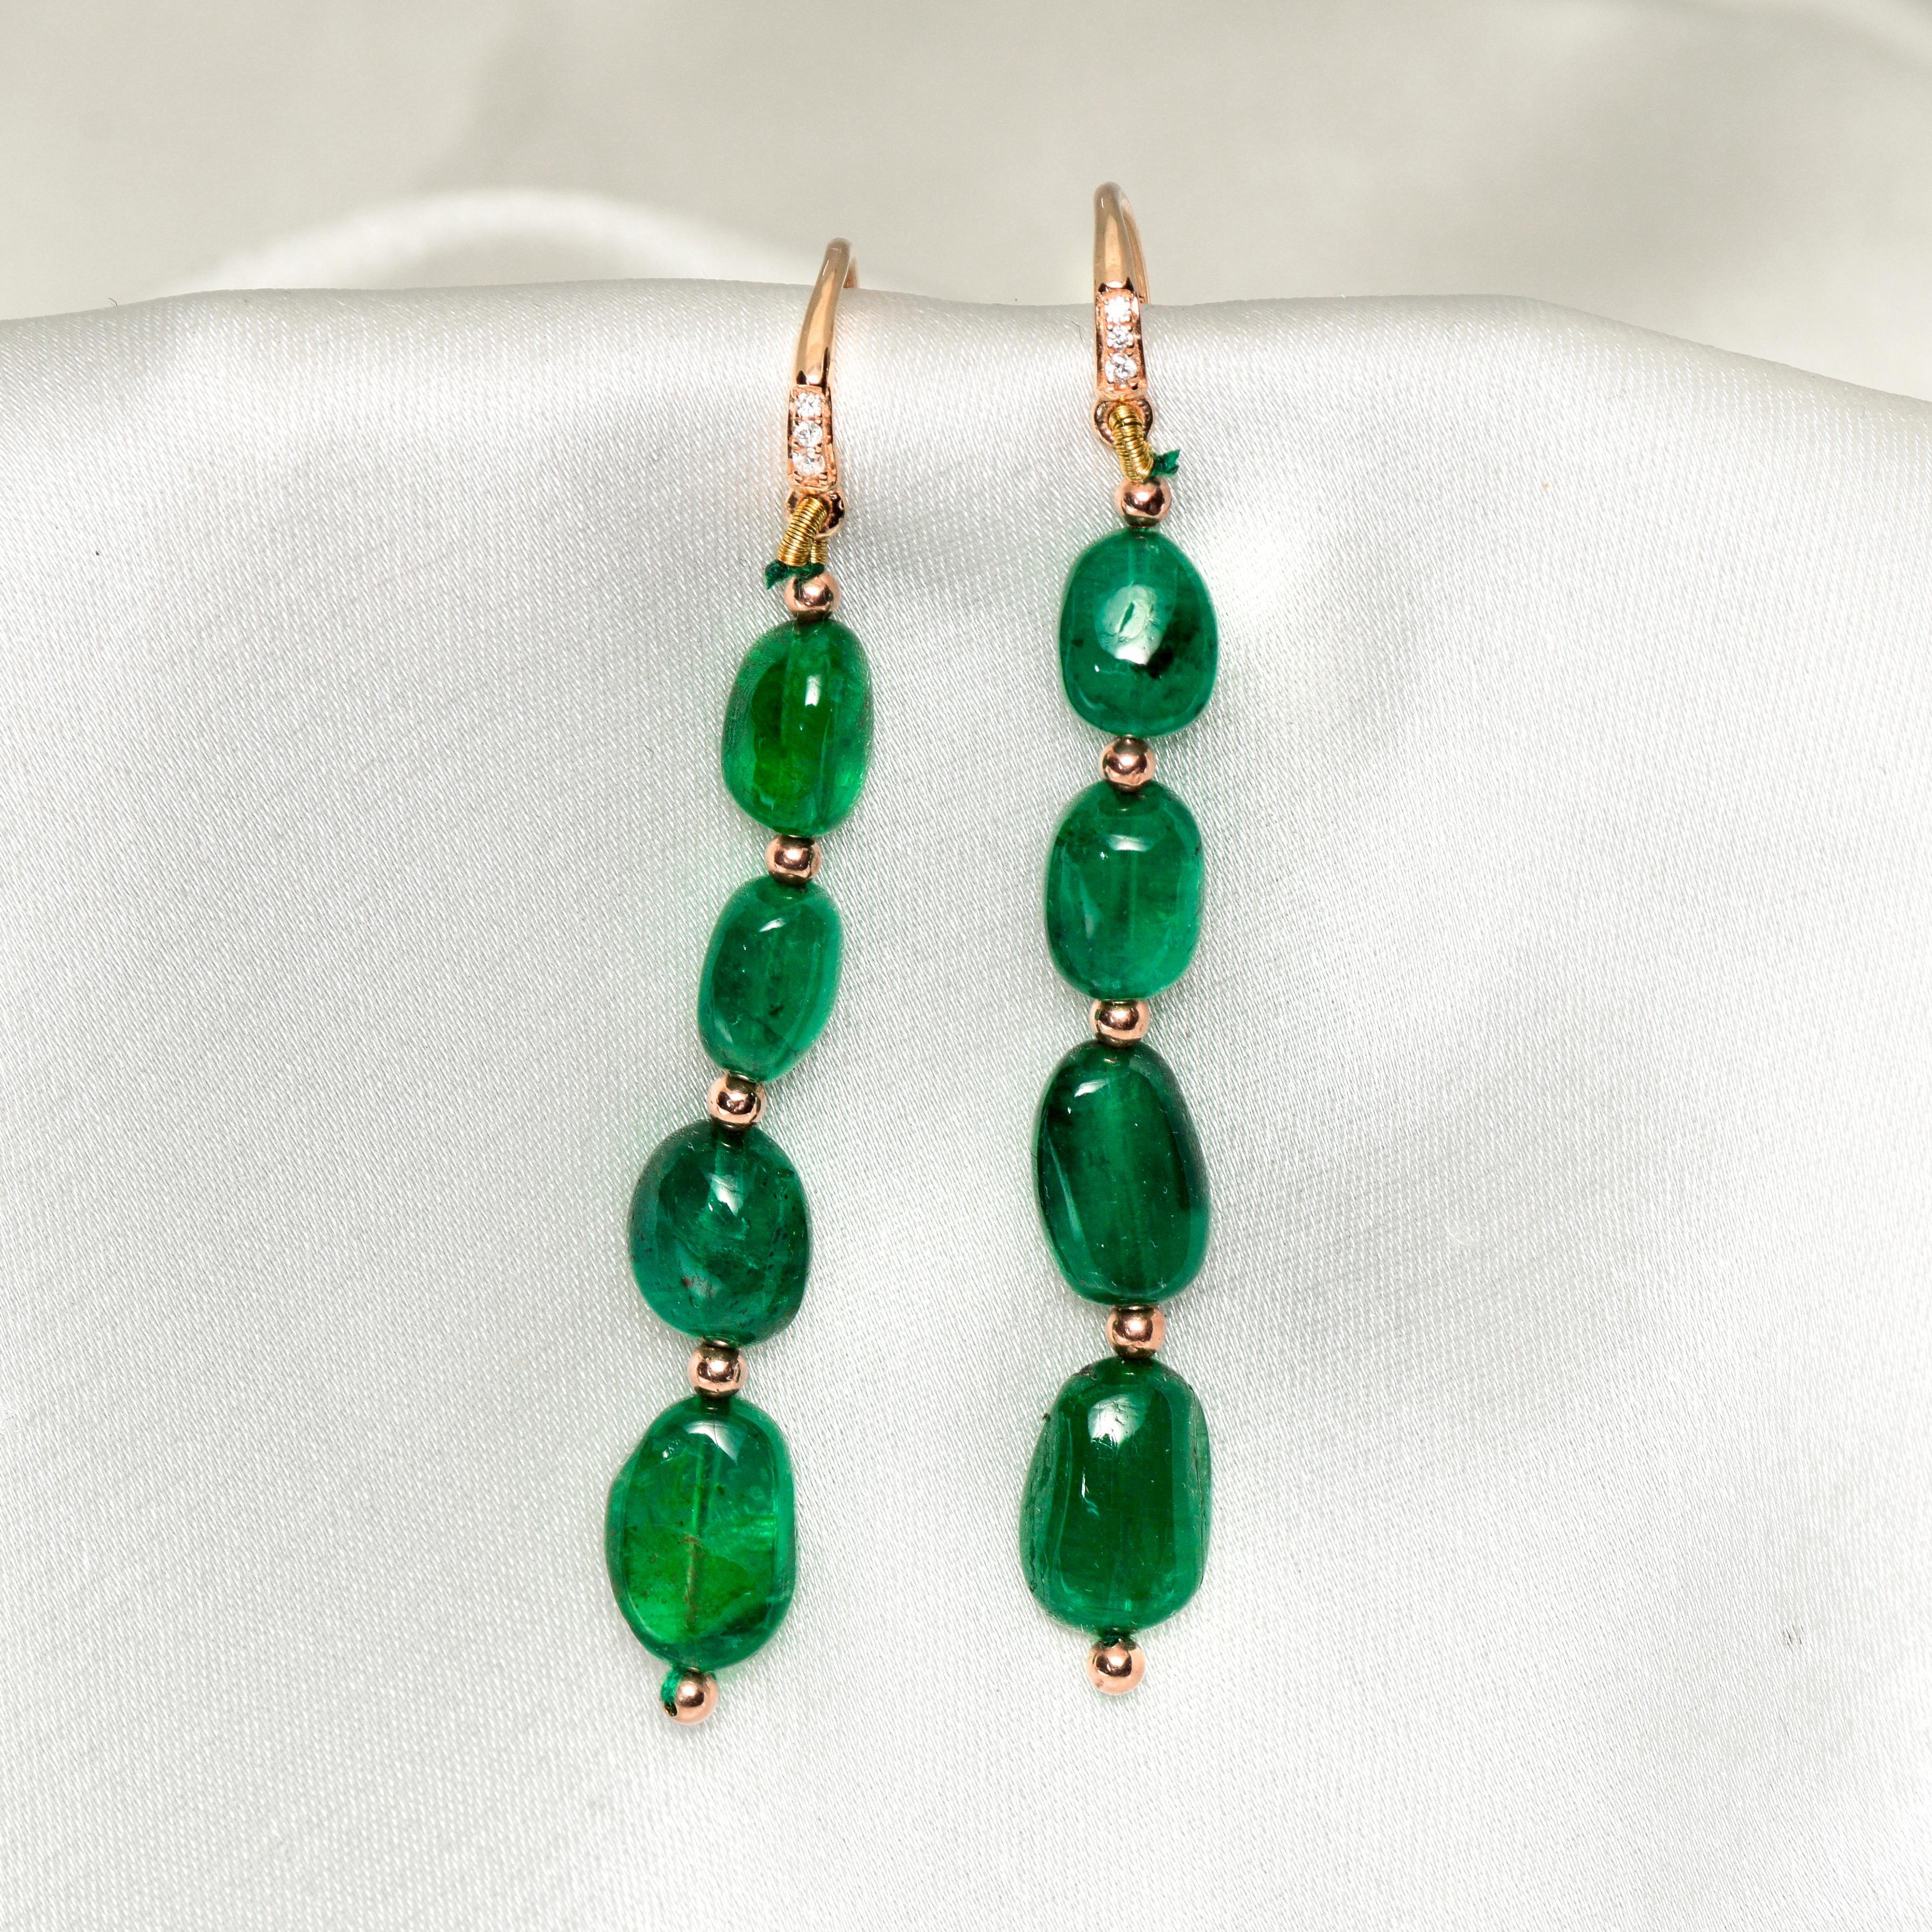 **Ein IGI 14K Rose Gold 20.10 Ct Emerald&Diamonds Antike Art Deco Stil Haken Ohrringe **

Paare von IGI-zertifizierten natürlichen grünen Smaragd als der zentrale Stein mit einem Gewicht von 20,10 ct mit dem FG VS Akzent Diamanten mit einem Gewicht